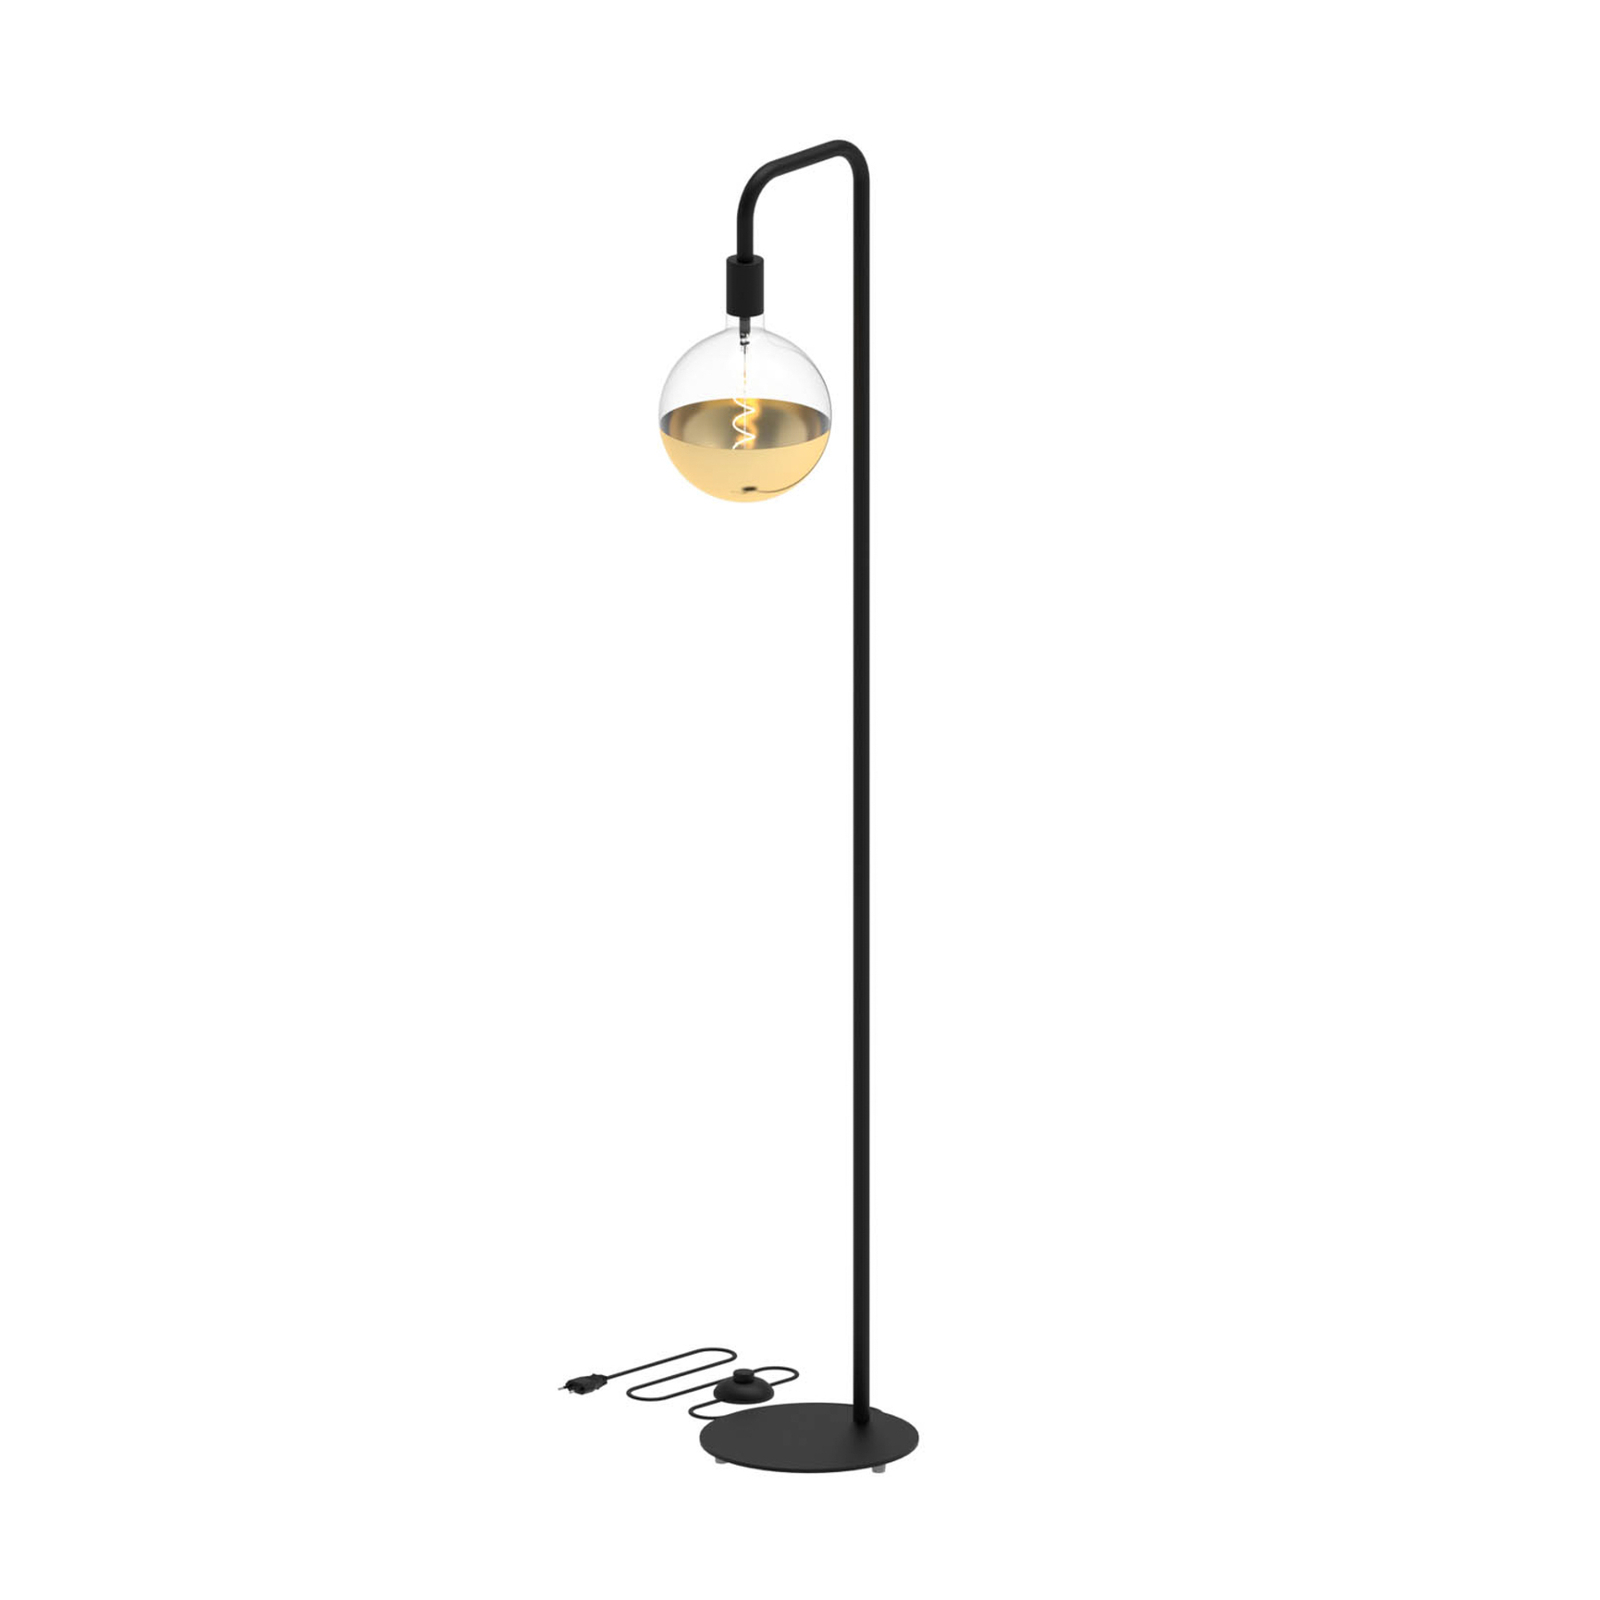 Calex U-Line floor lamp